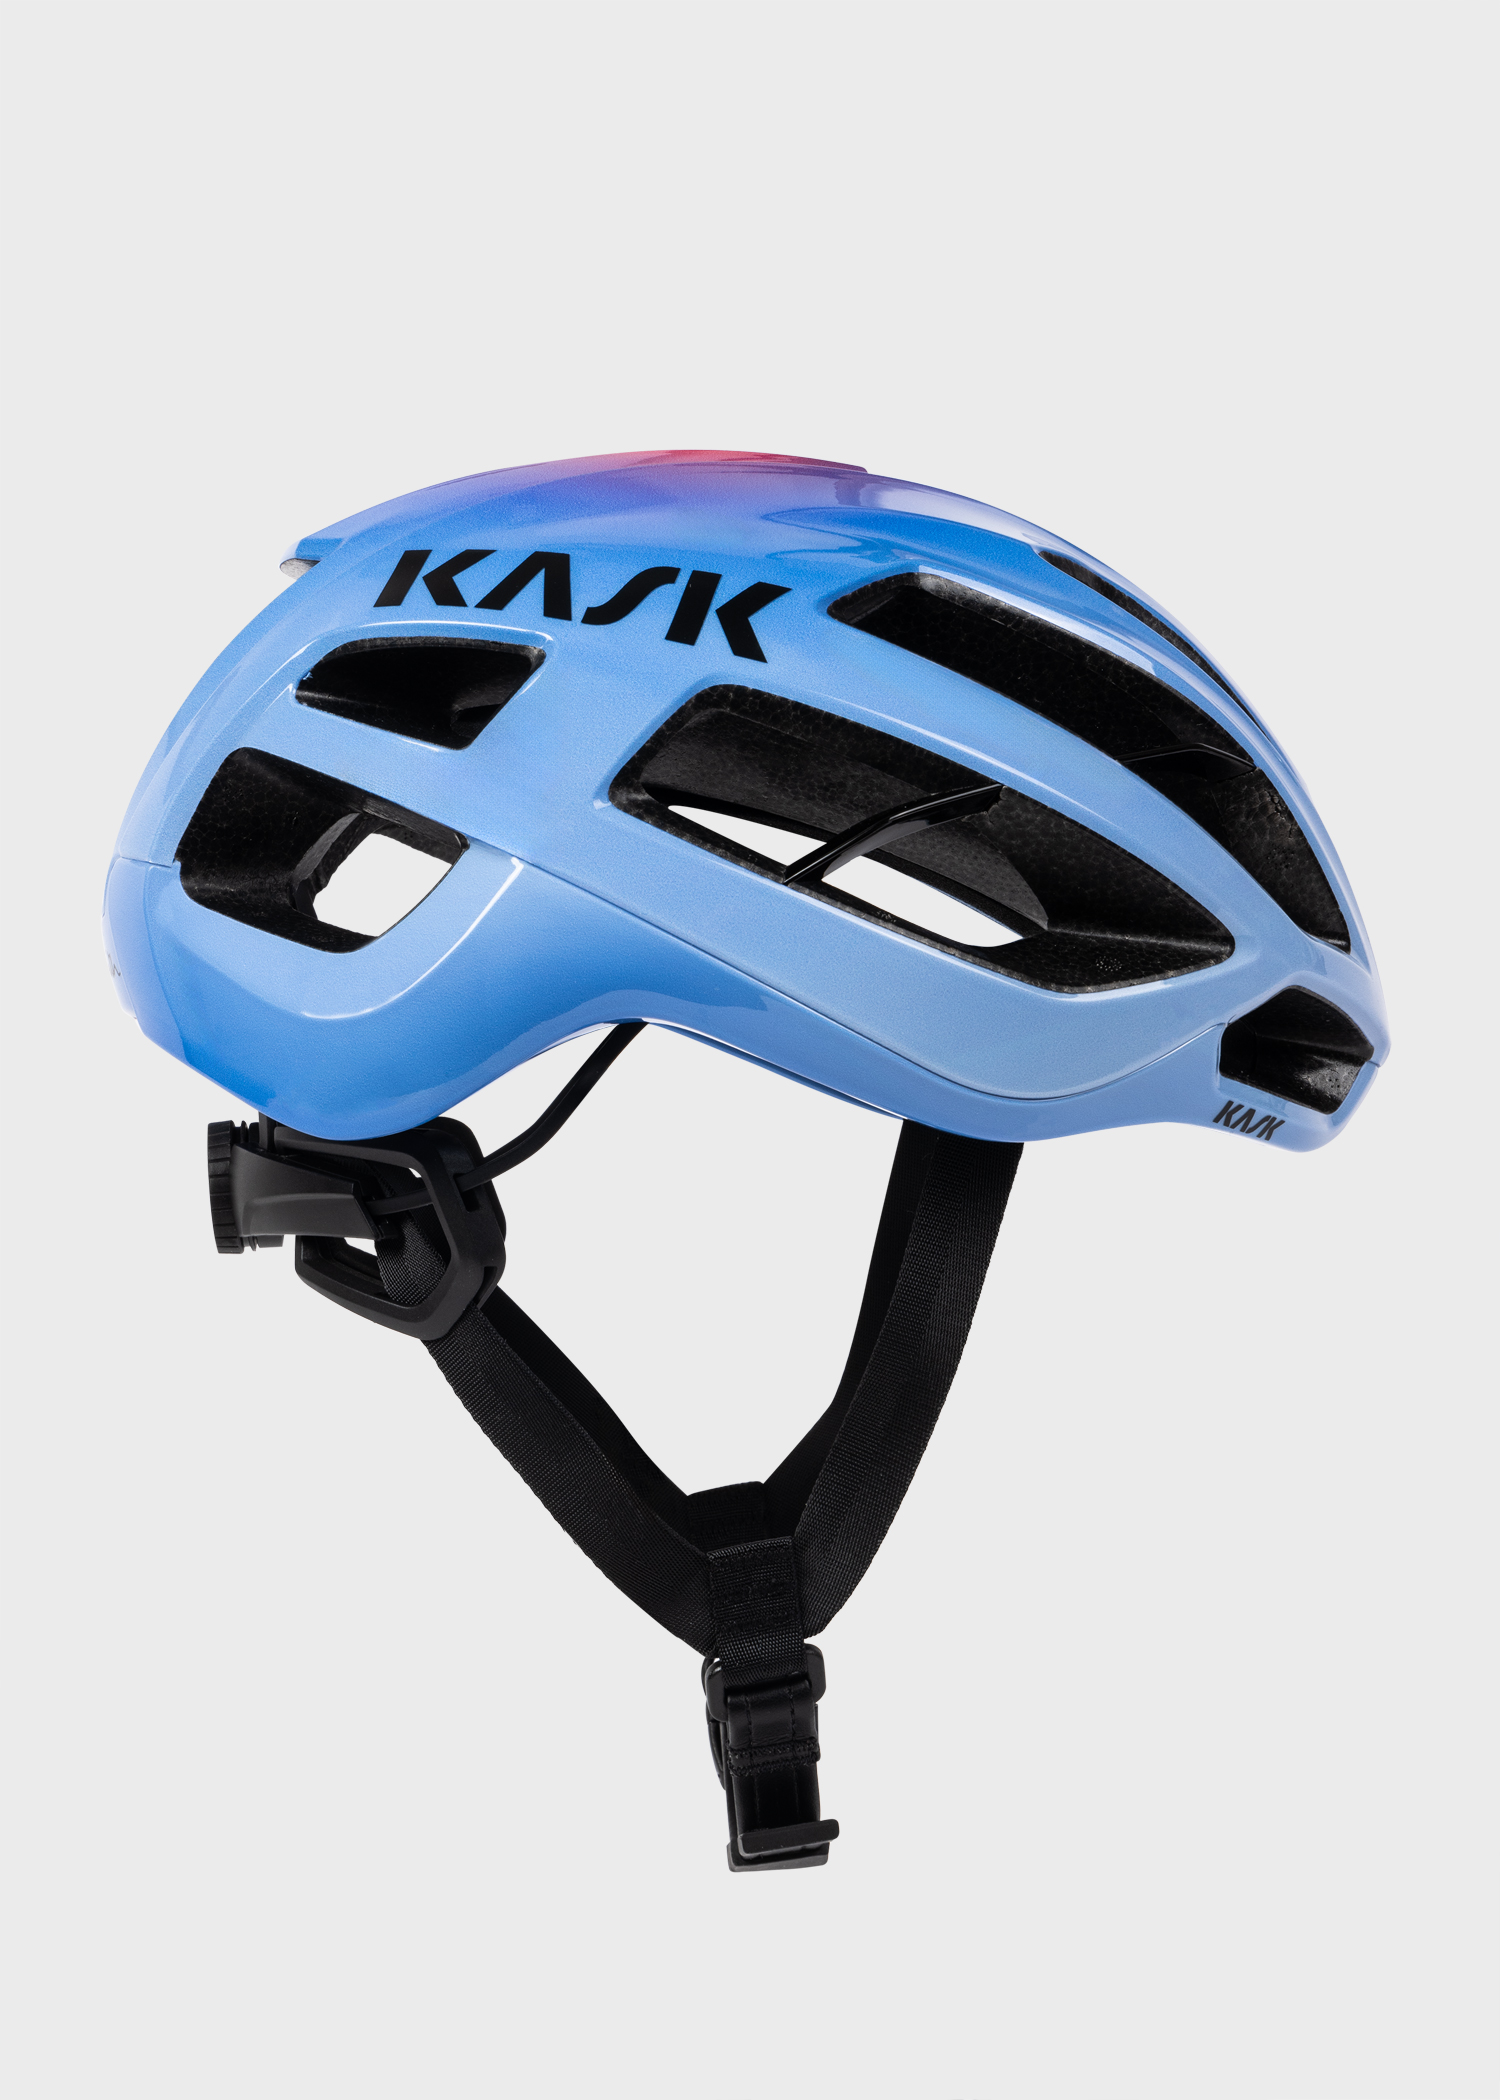 Paul Smith + Kask Artist Stripe Fade Protone Cycling Helmet